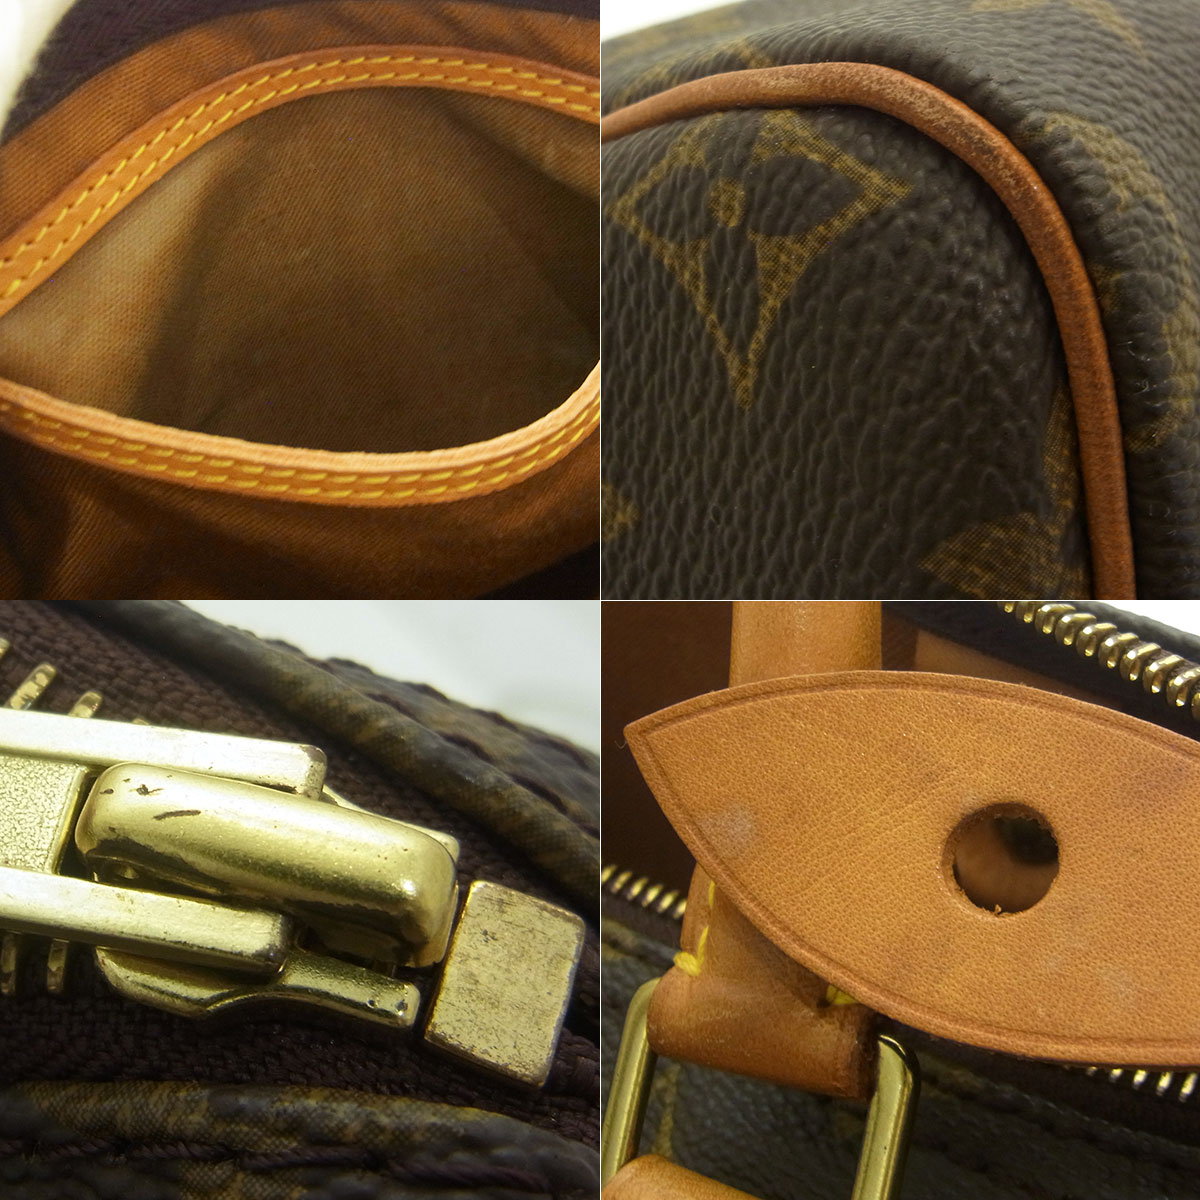 ルイヴィトン(Louis Vuitton) スピーディ30 M41526 ボストンバッグ 鍵 カデナ モノグラム ブラウン